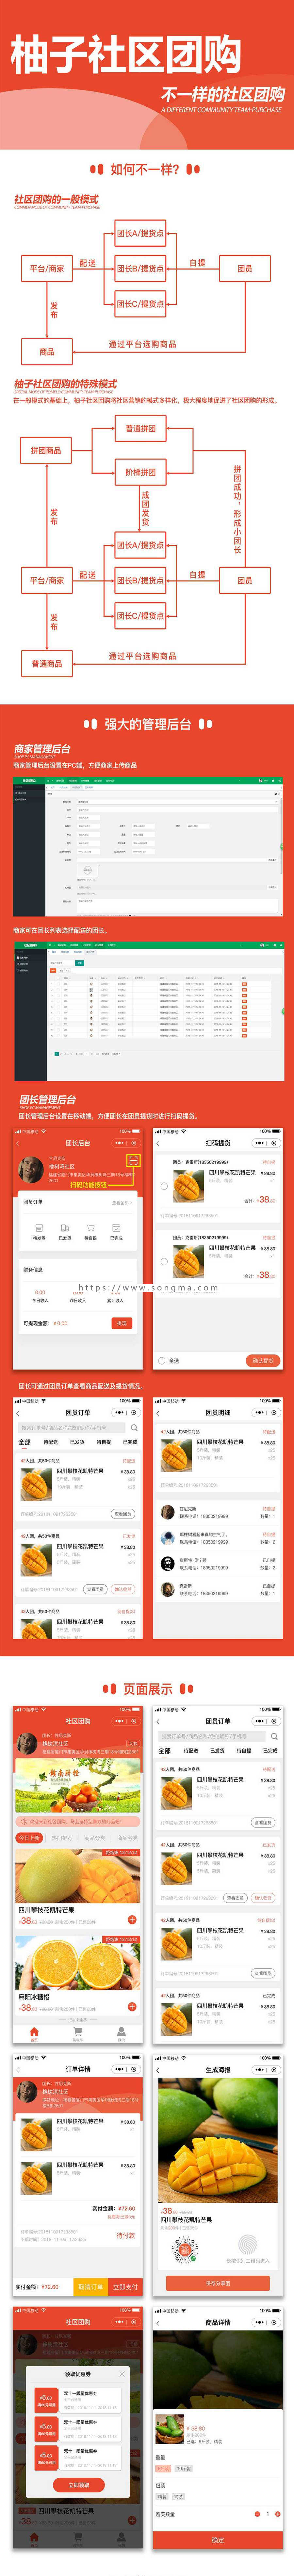 柚子社区团购小程序1.3.12